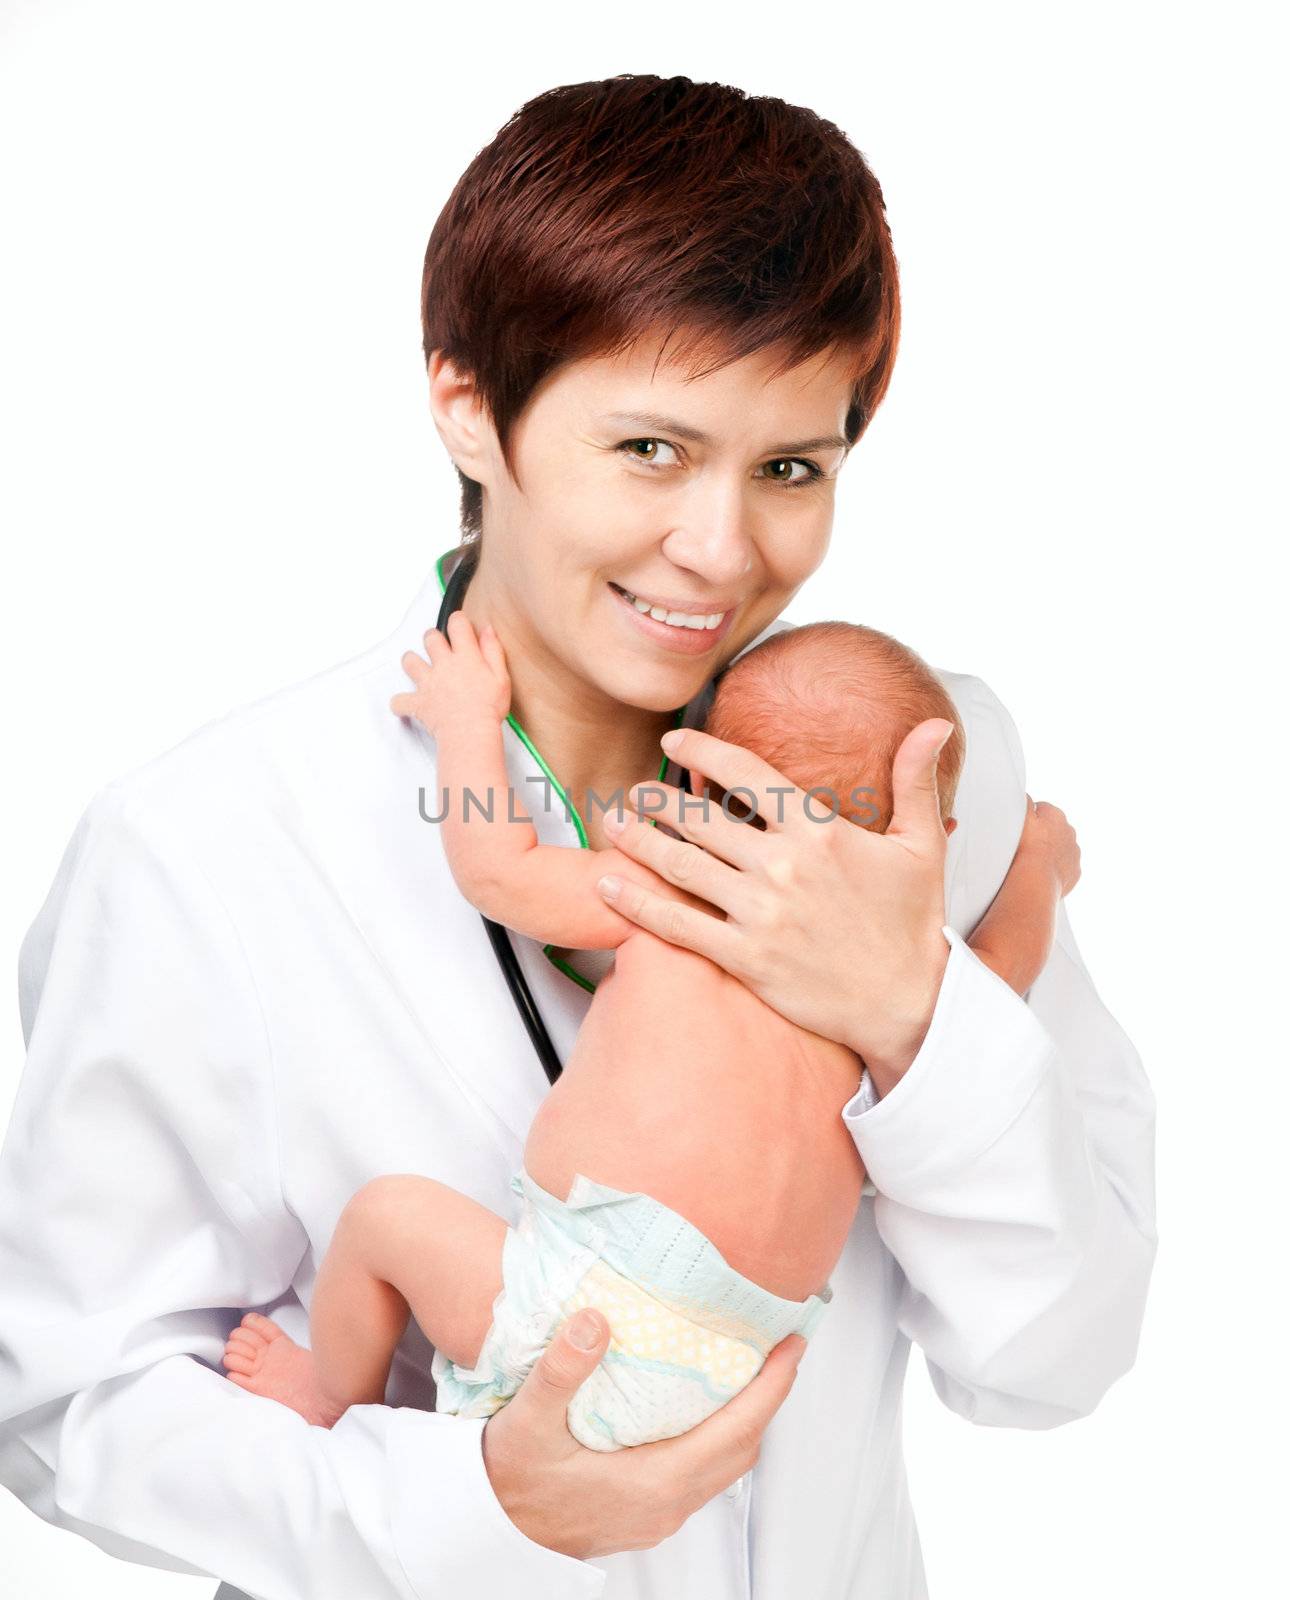 Inhalant Doctor Baby by GekaSkr